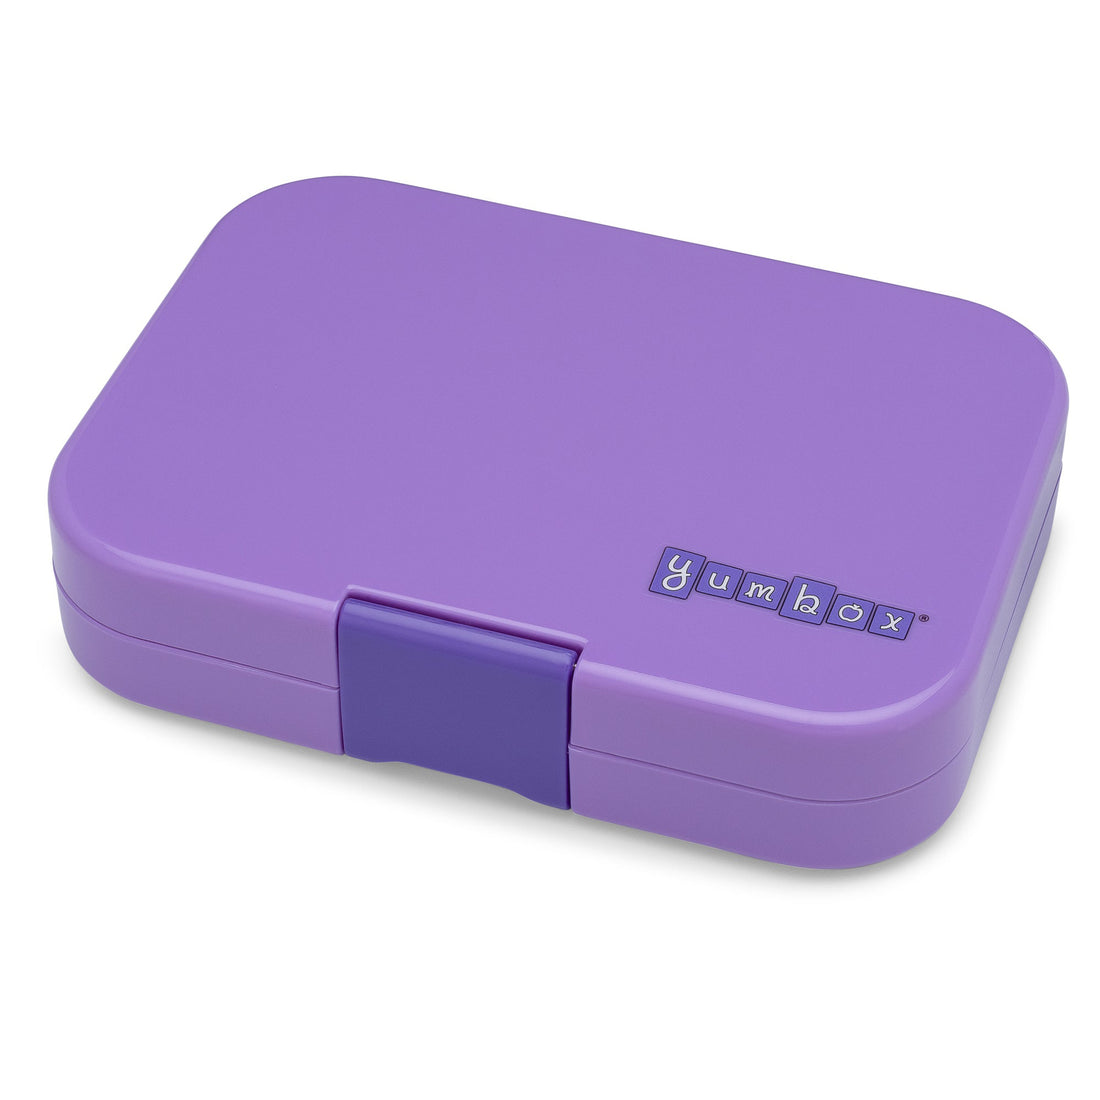 yumbox-panino-4-compartment-lunch-box-dreamy-purple-panda-yumb-dpii202110p- (3)